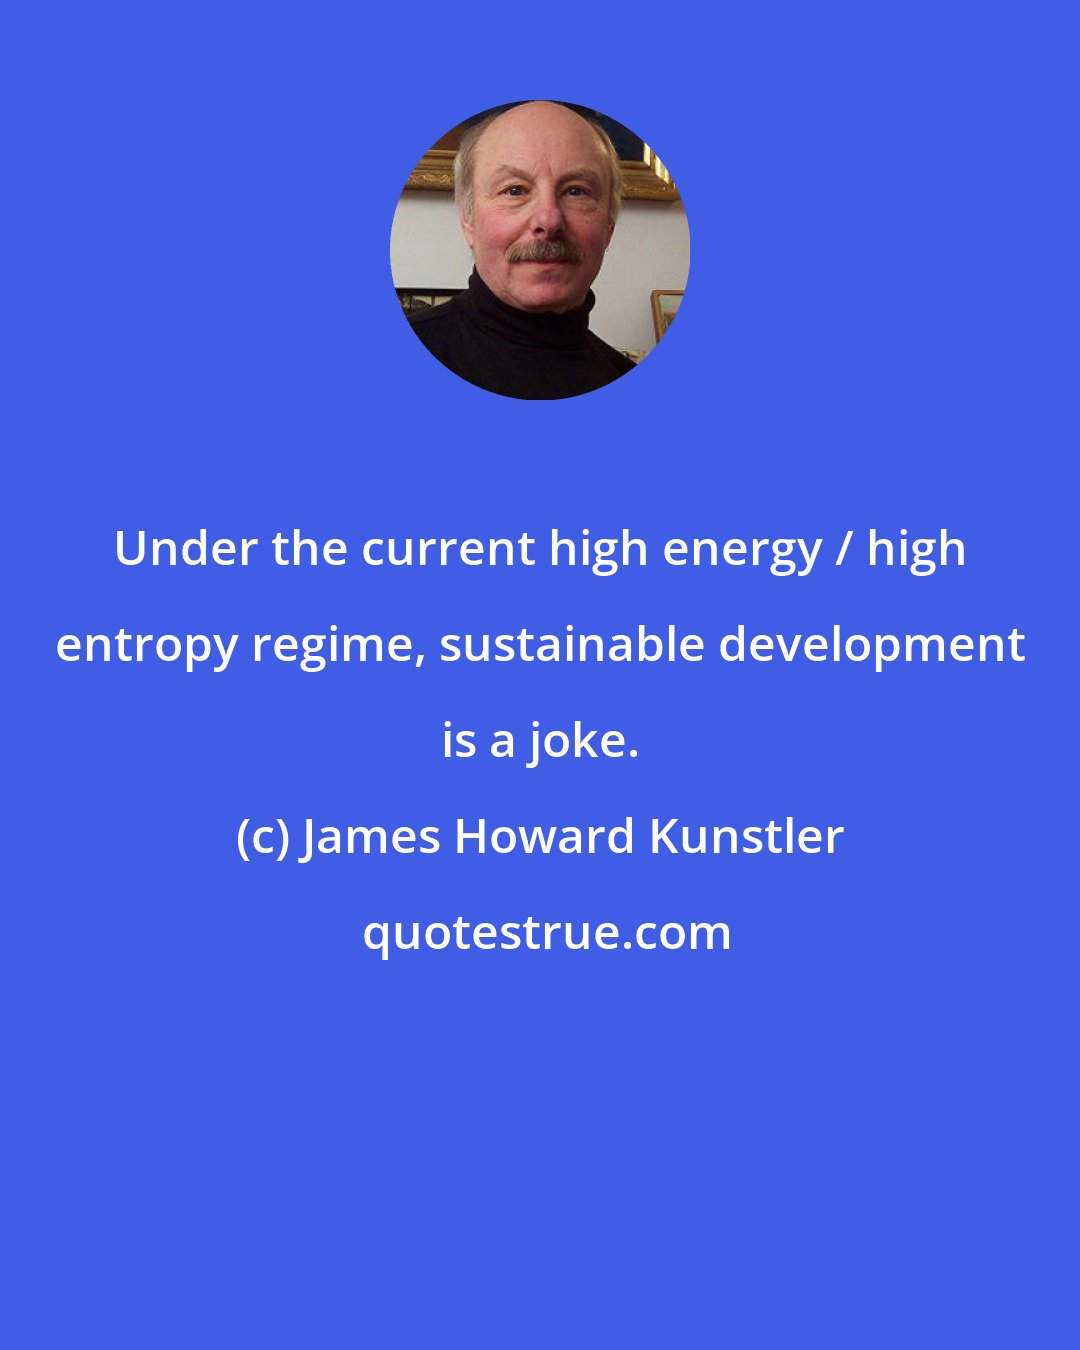 James Howard Kunstler: Under the current high energy / high entropy regime, sustainable development is a joke.